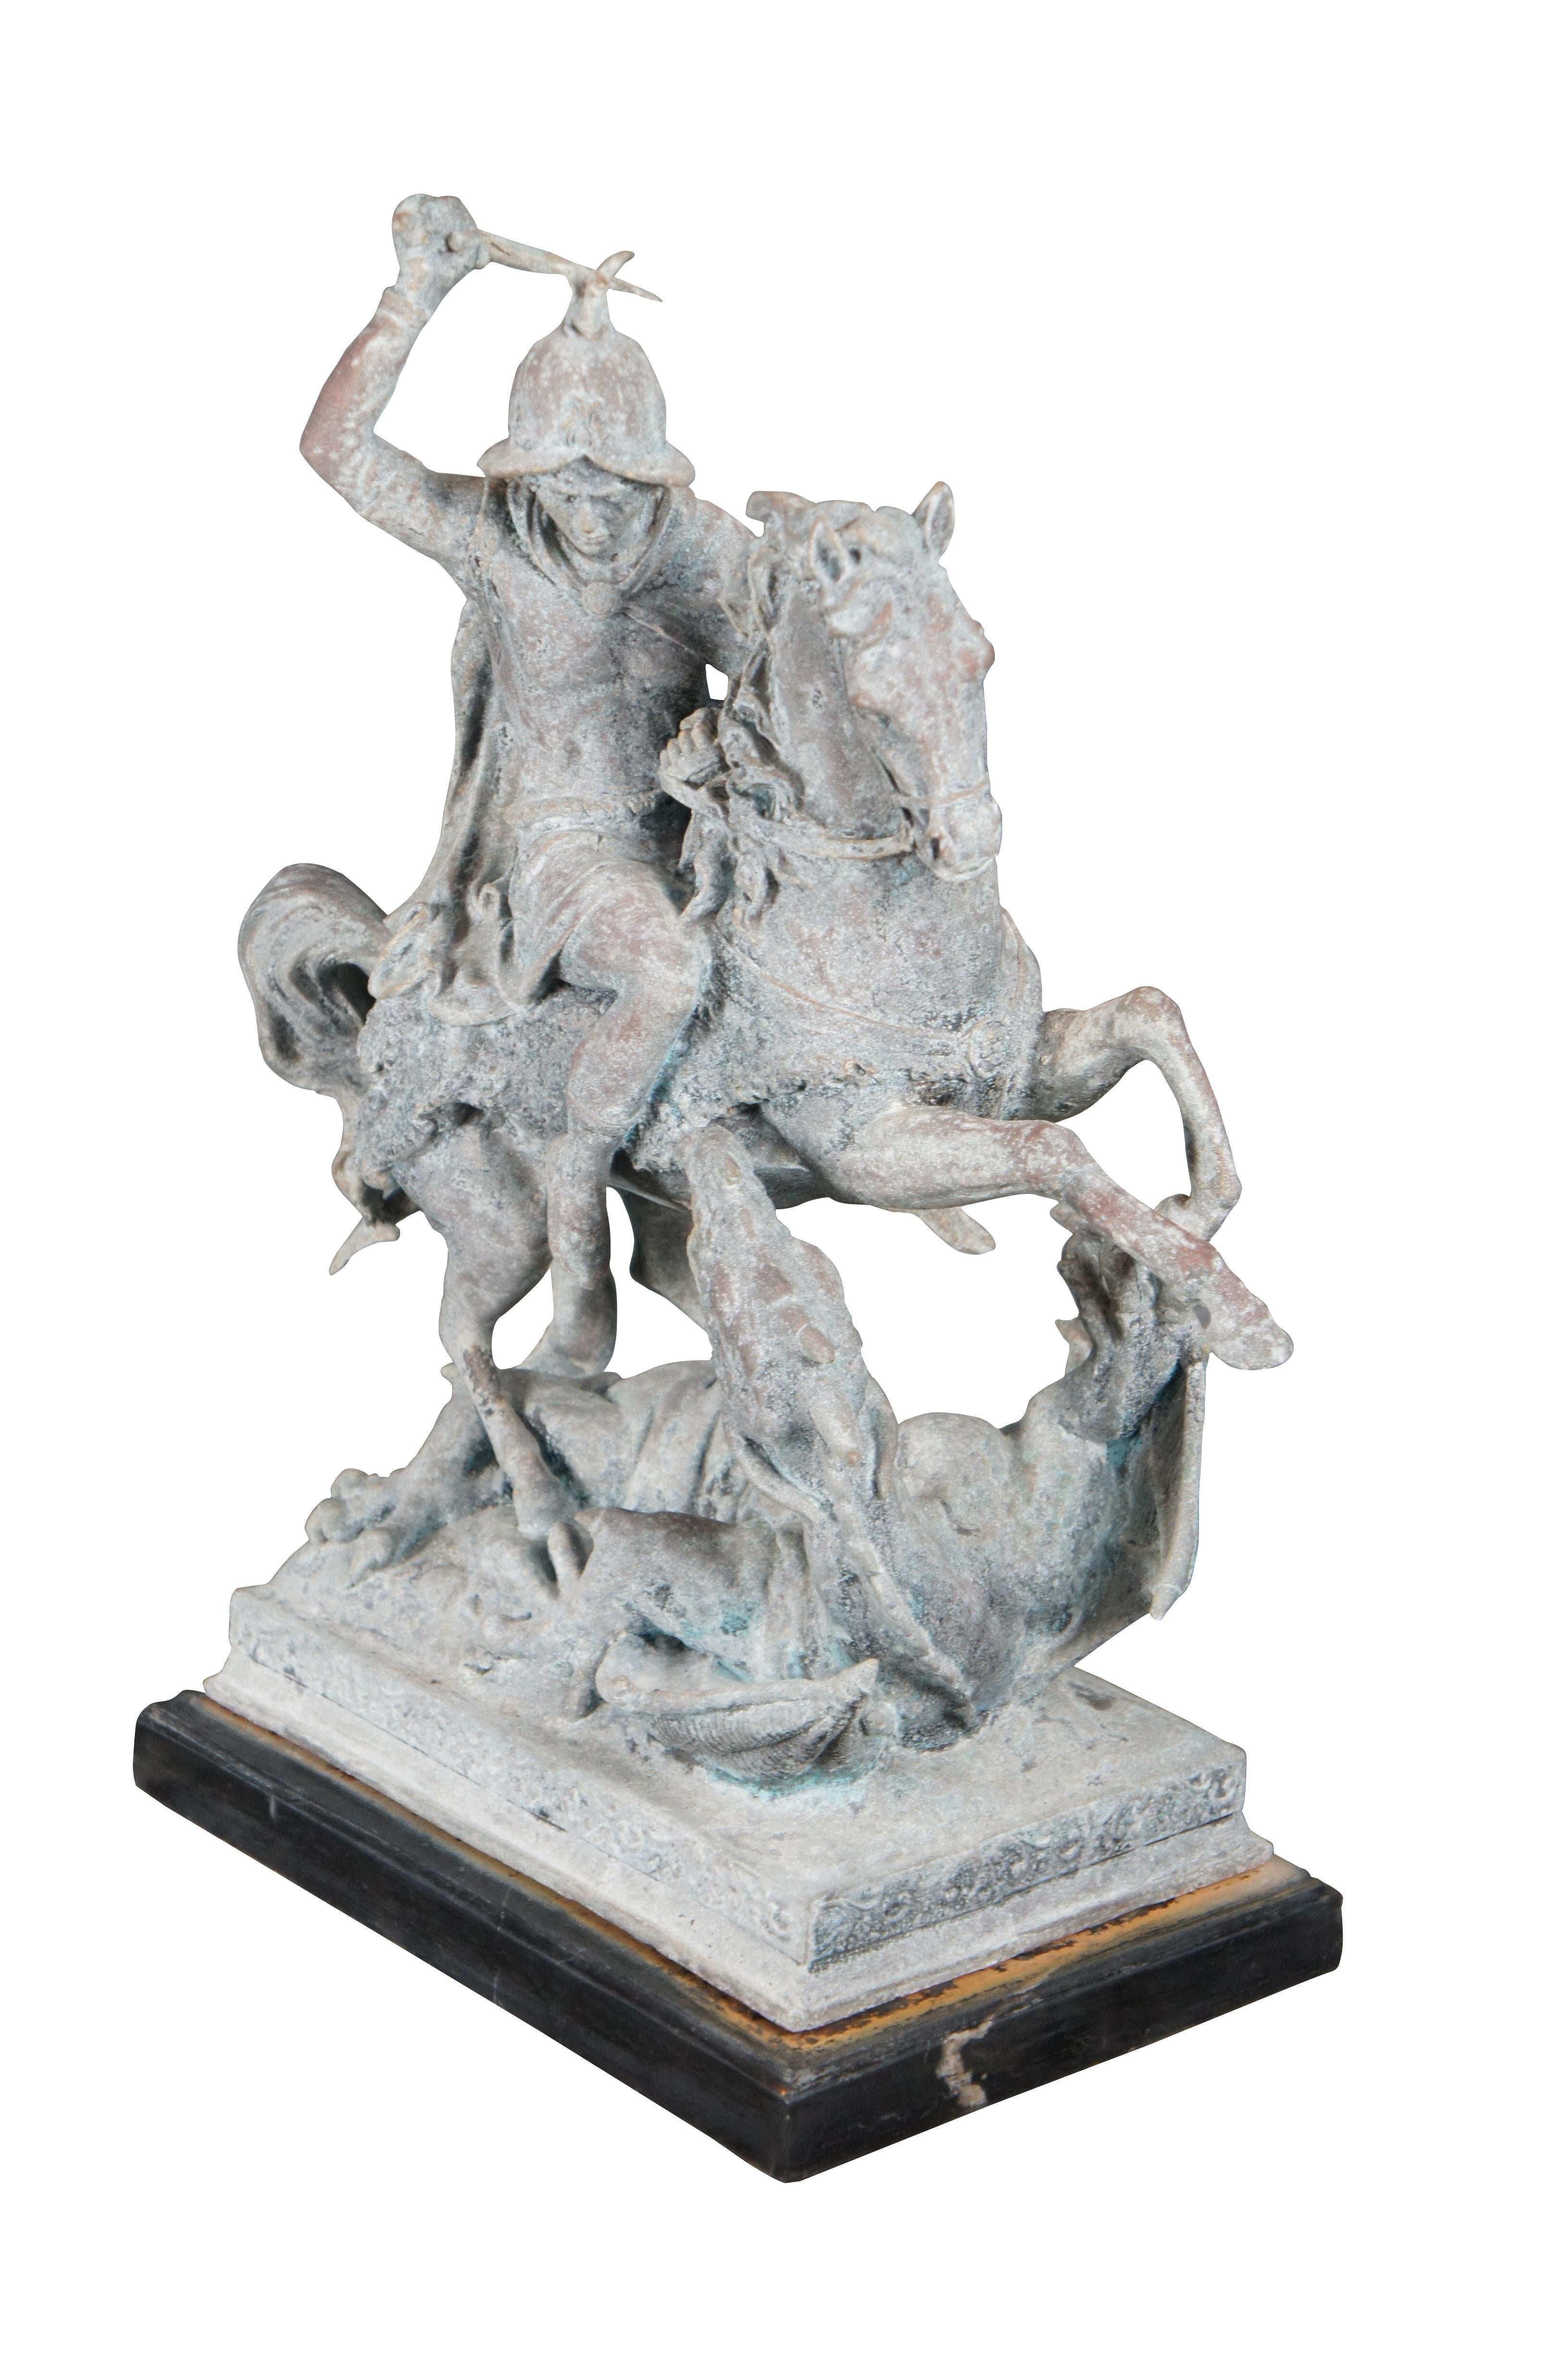 Une sculpture figurative de Saint Georges et le Dragon, d'après Antoine Louis Barye. La légende raconte que Saint-Georges, un soldat vénéré par la chrétienté, vainc un dragon. L'histoire raconte qu'à l'origine, le dragon extorquait un tribut aux